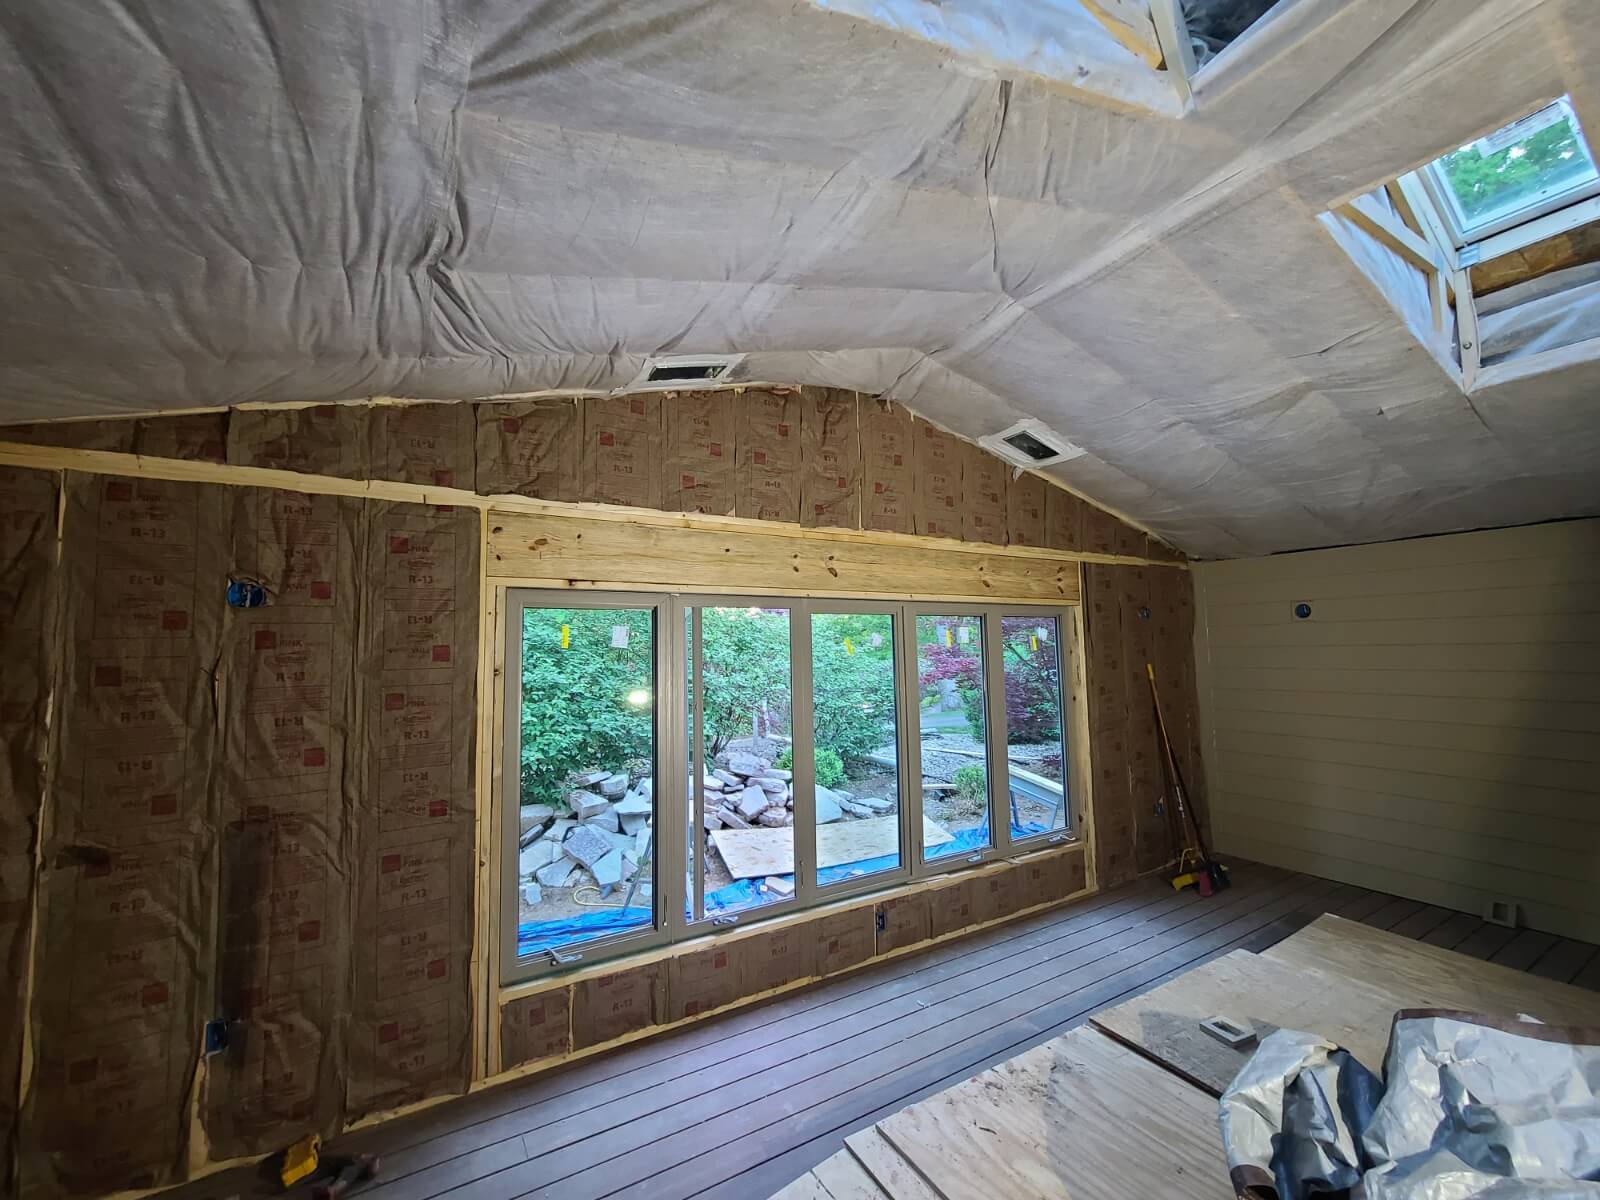 Boise attic insulation company